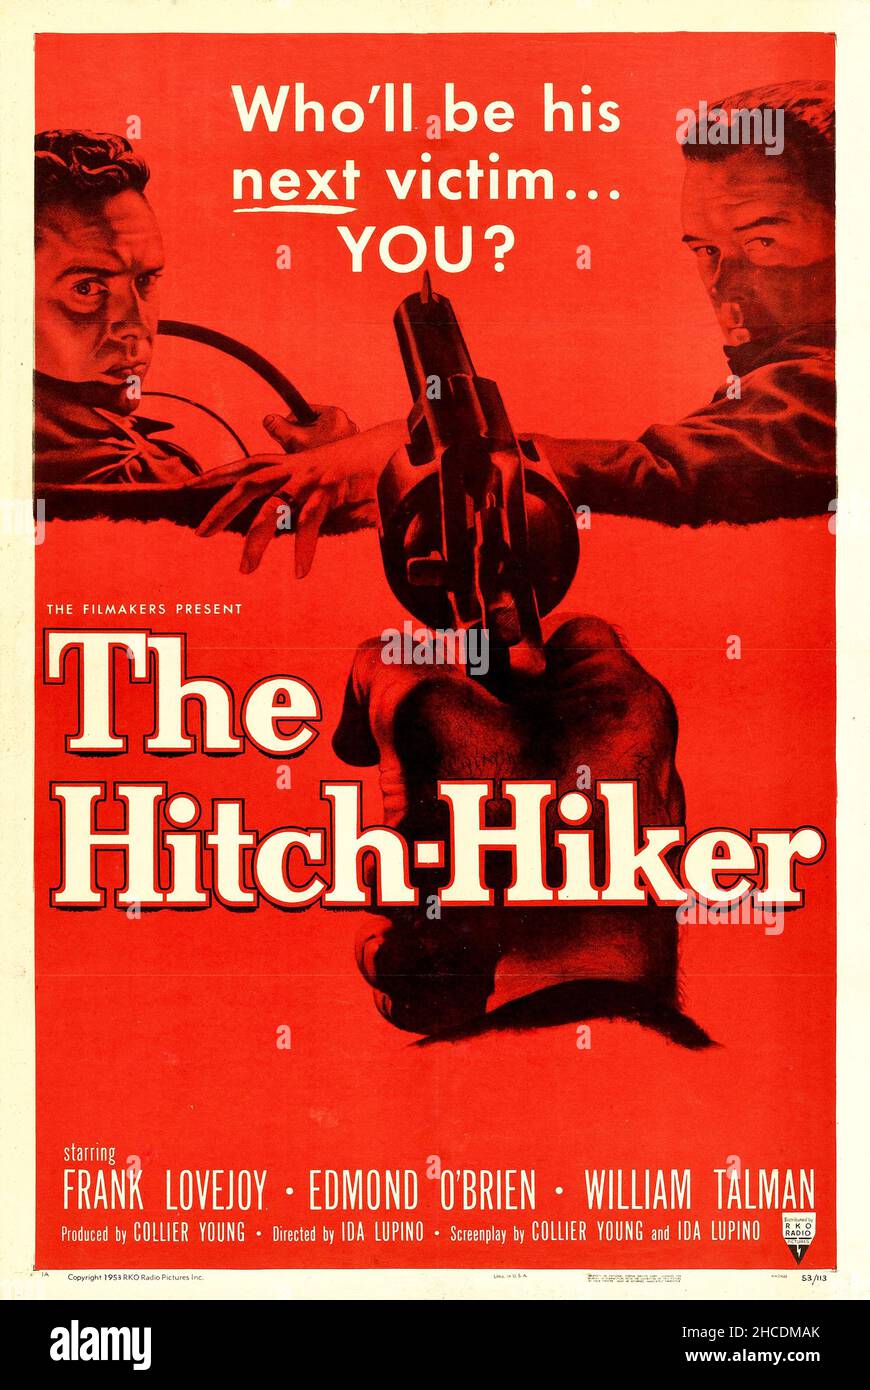 Poster für The Hitch-Hiker, der erste amerikanische Mainstream-Film Noir unter der Regie einer Frau - Ida Lupino. Stockfoto